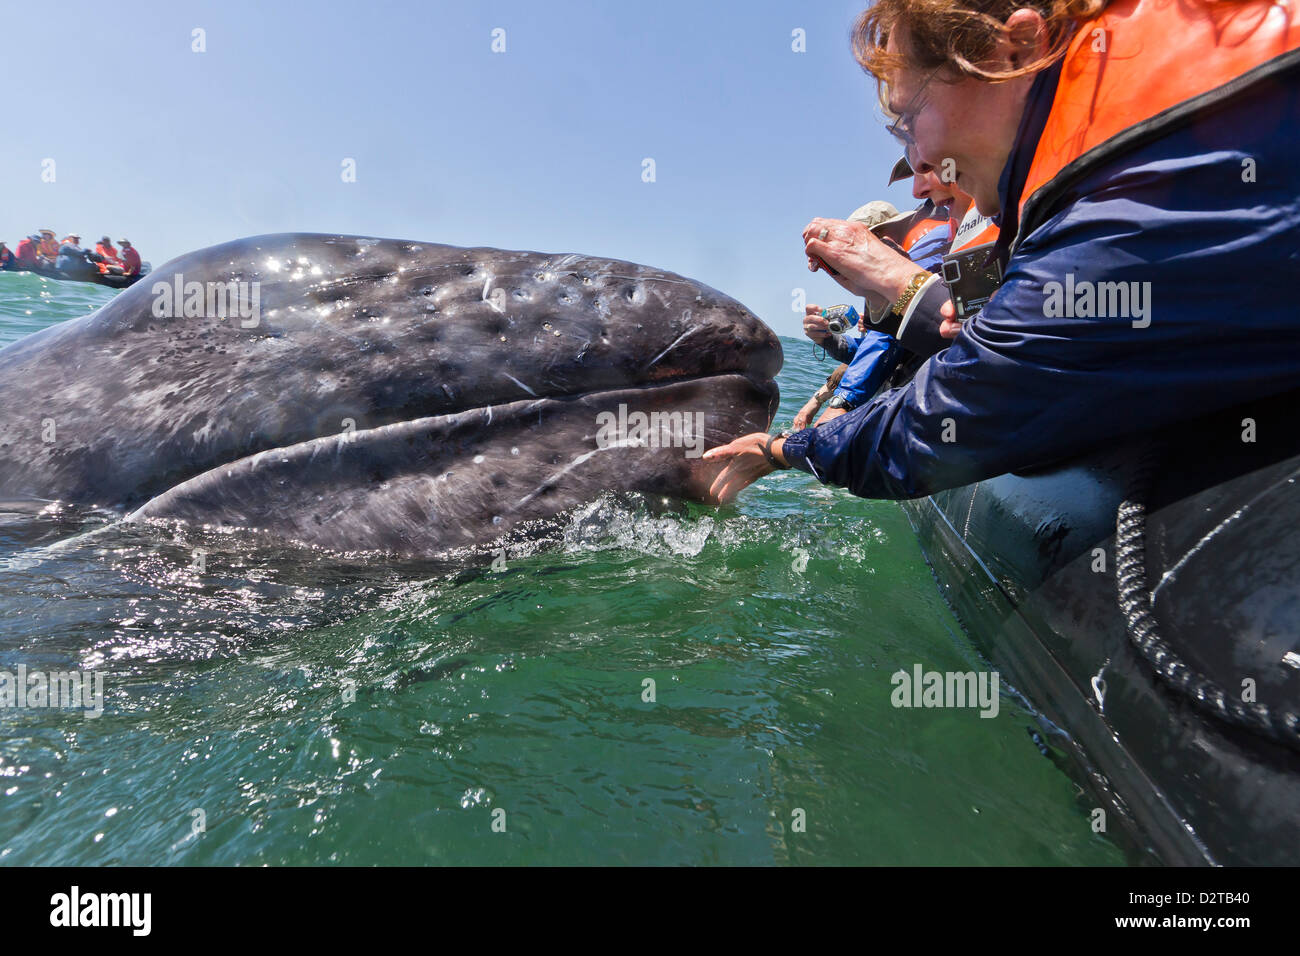 California baleine grise (Eschrichtius robustus) et excité d'observateurs de baleines, la lagune de San Ignacio, Baja California Sur, Mexique Banque D'Images